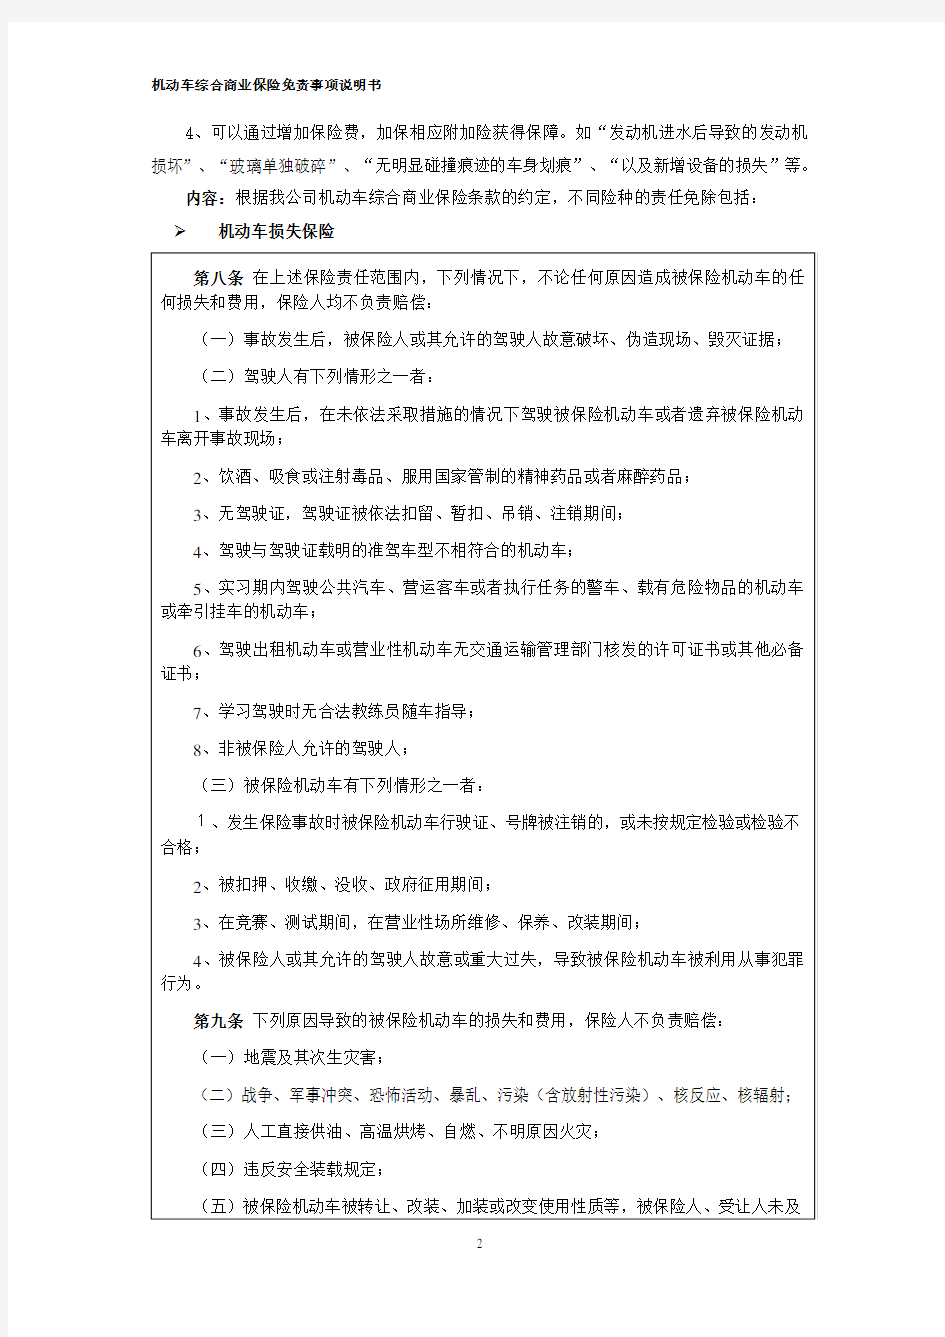 机动车综合商业保险免责事项说明书(2014版).